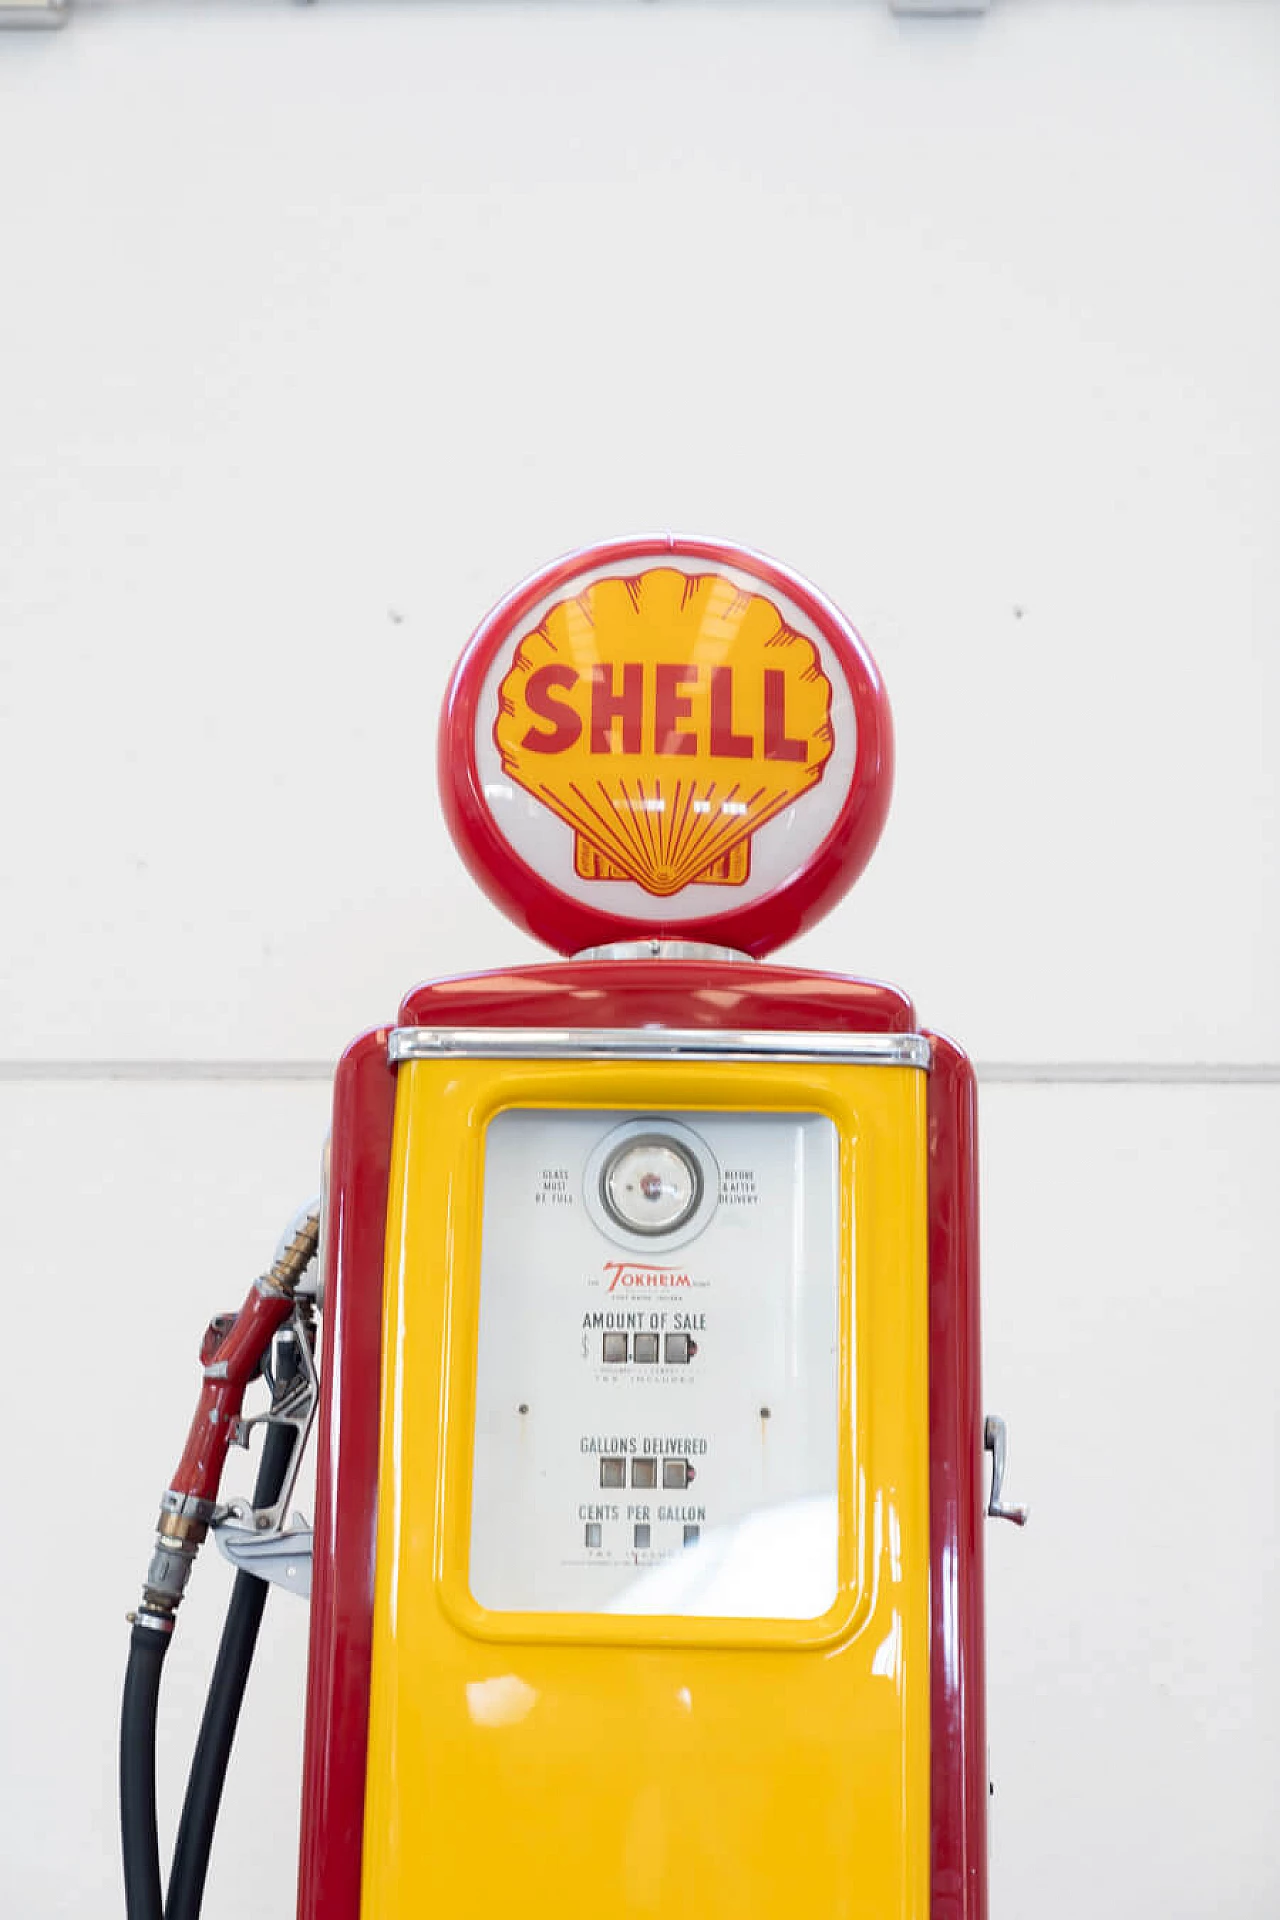 Distributore di benzina Shell, anni '50 10